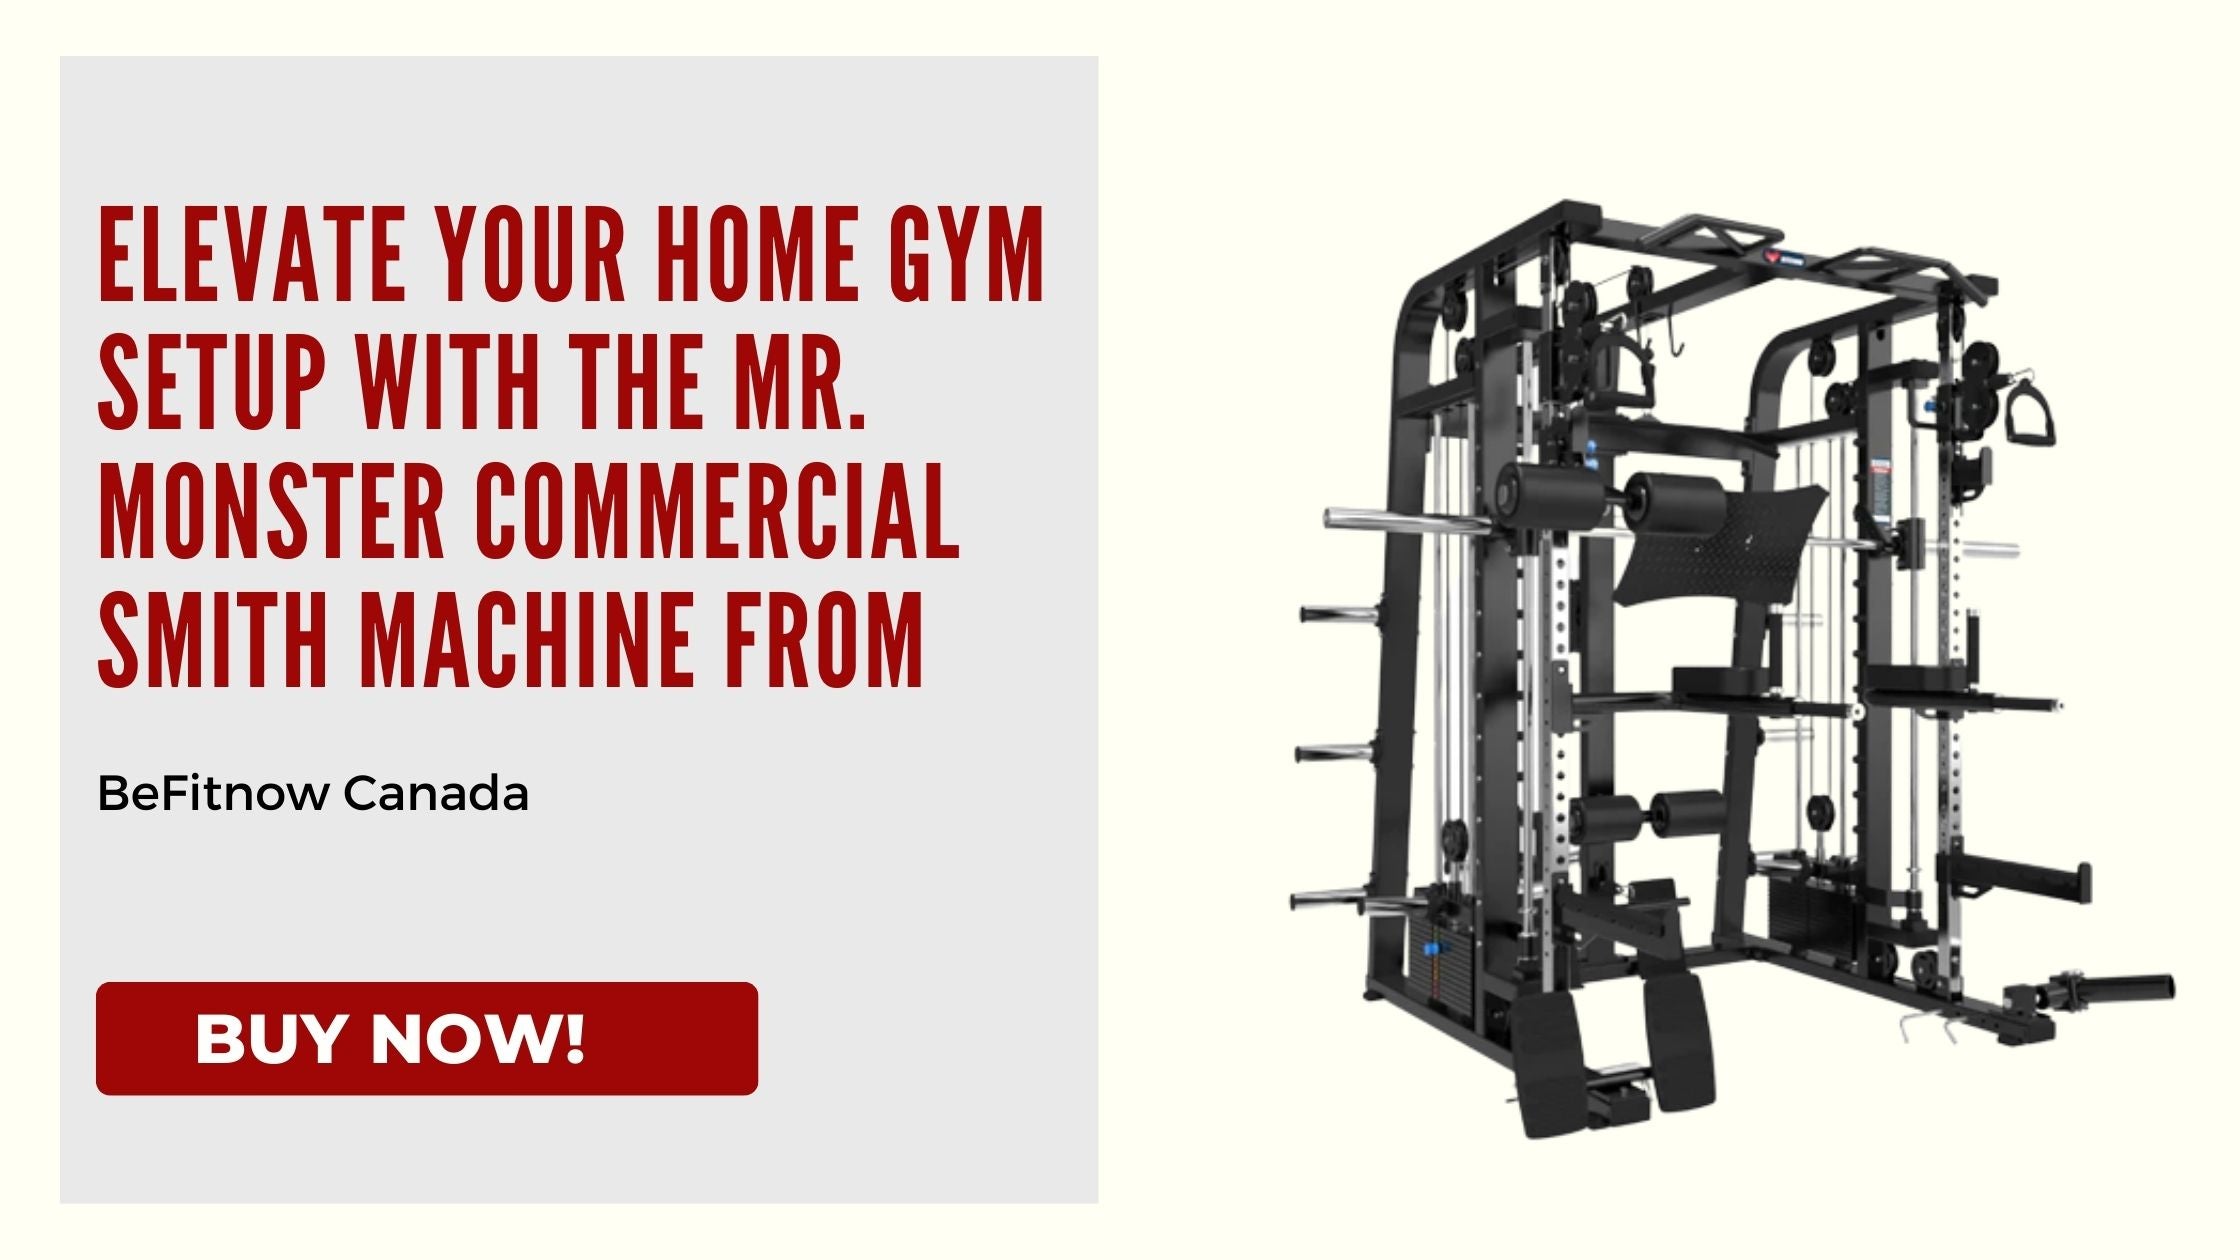 Élevez votre configuration de salle de sport à domicile avec la machine Mr. Monster Commercial Smith de BeFitnow Canada